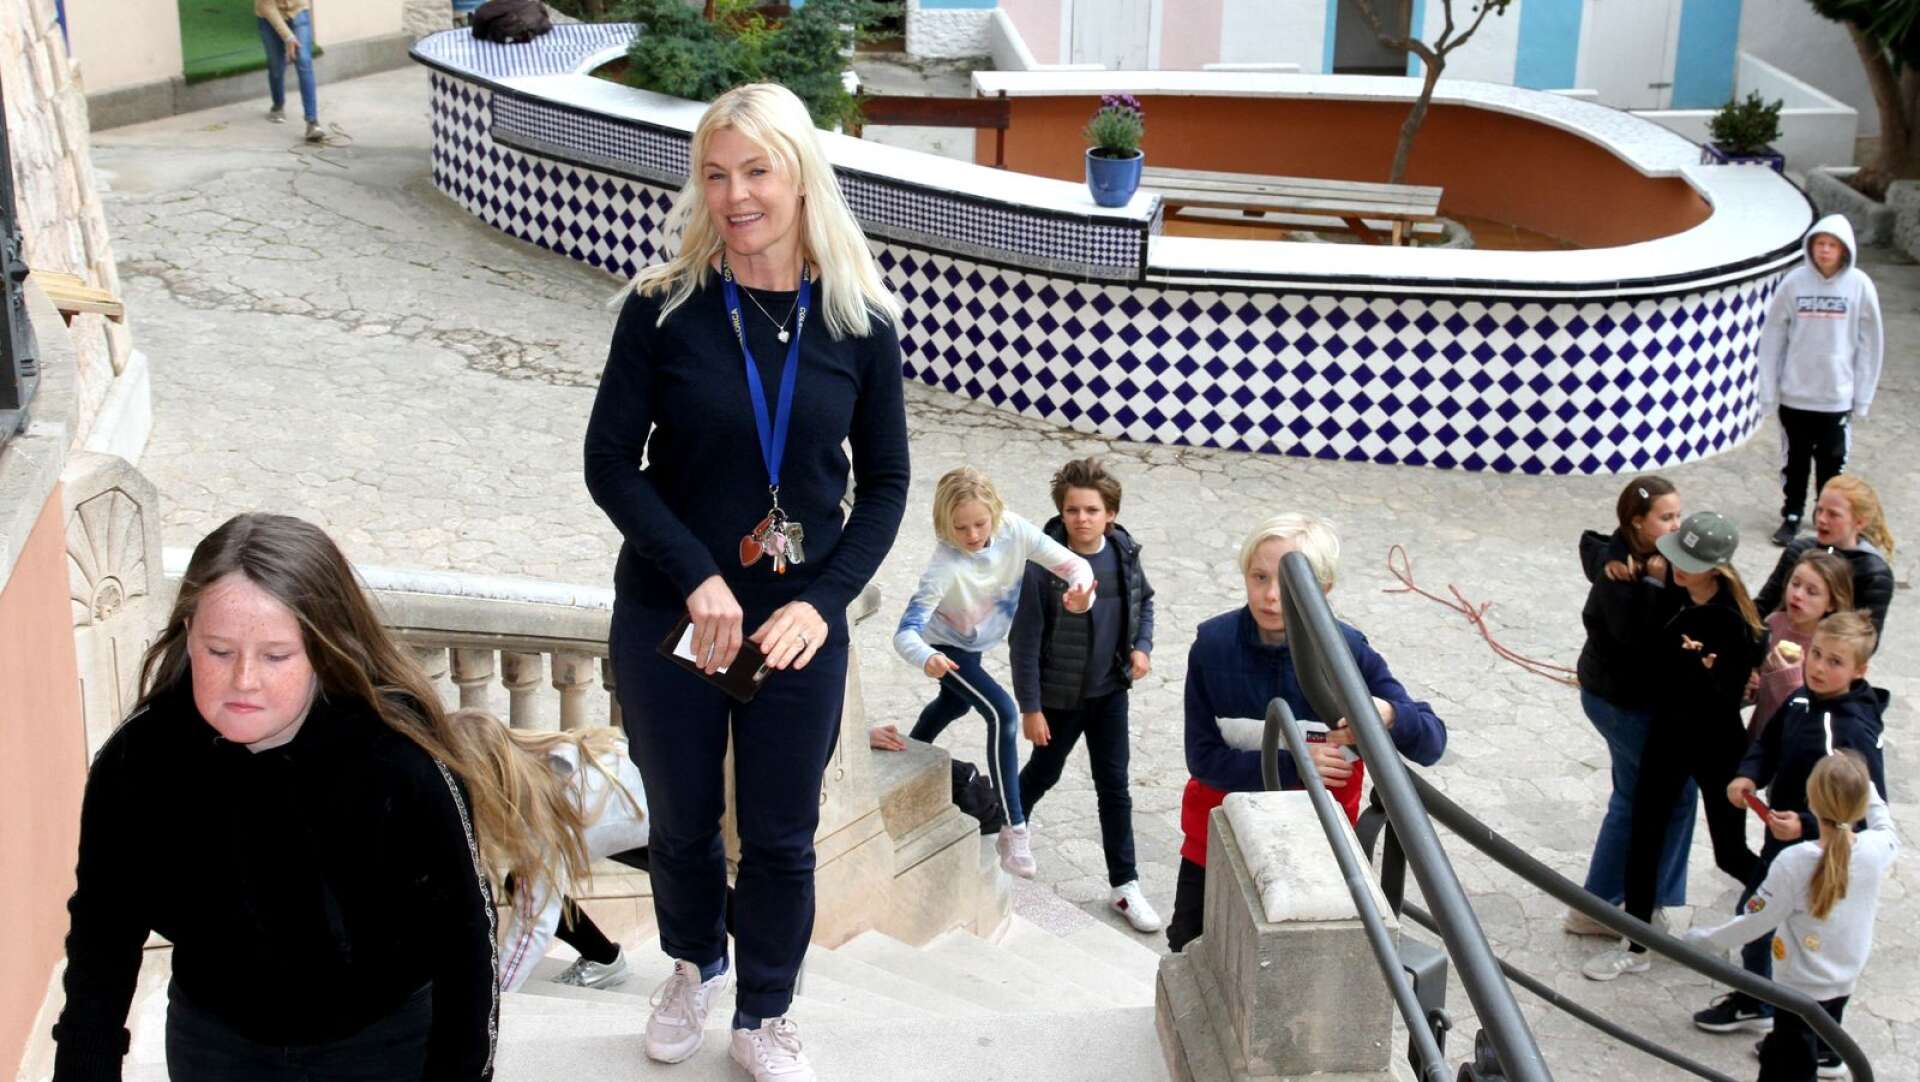 Therese Lottini är rektor på svenska skolan på Mallorca sedan några år tillbaka. Dessförinnan var hon lärare på skolan i elva år. Villa Schembri är en slottsliknande byggnad med många rum, vackra målningar, stor gård, plaskdamm, bardisk och hönshus.